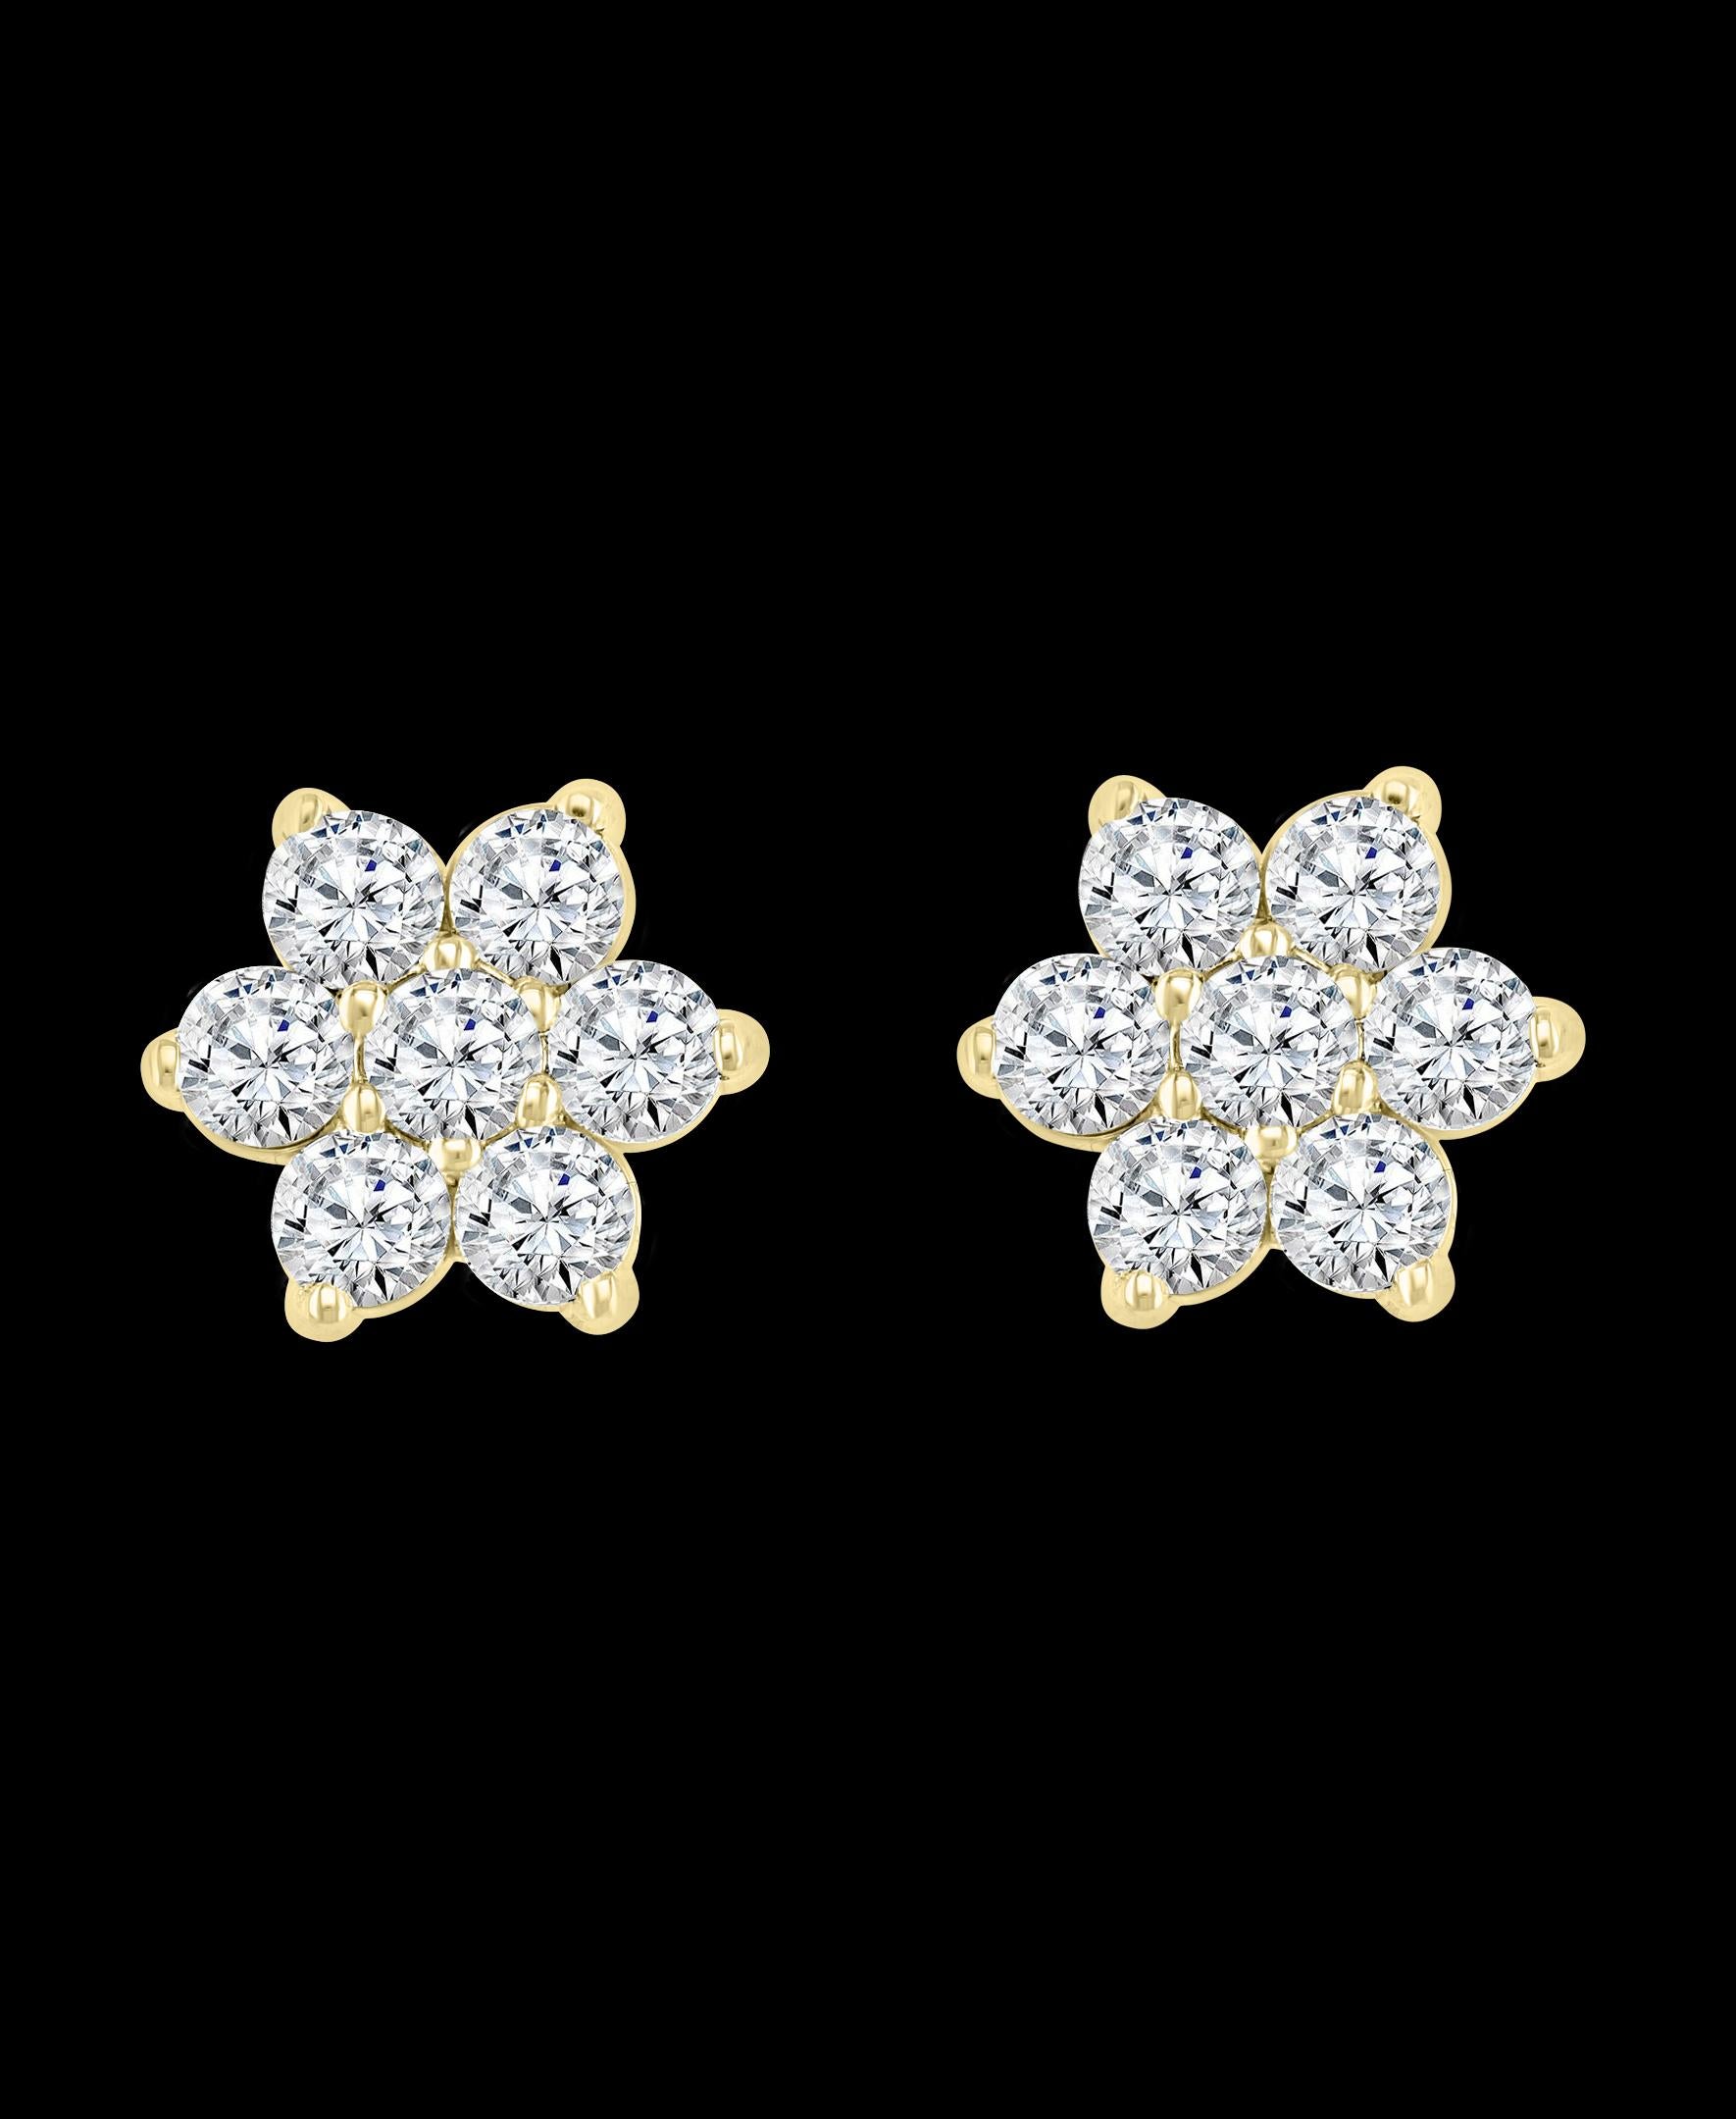 2.80 Karat 7 Diamanten Cluster Blume Ohrstecker aus 14 Karat Gelbgold
Ein süßes, schimmerndes Modell für jeden Tag der Woche. Diese Ohrstecker sind mit floralen Büscheln aus runden Diamanten im Brillantschliff mit einem Gesamtgewicht von 2,80 ct.